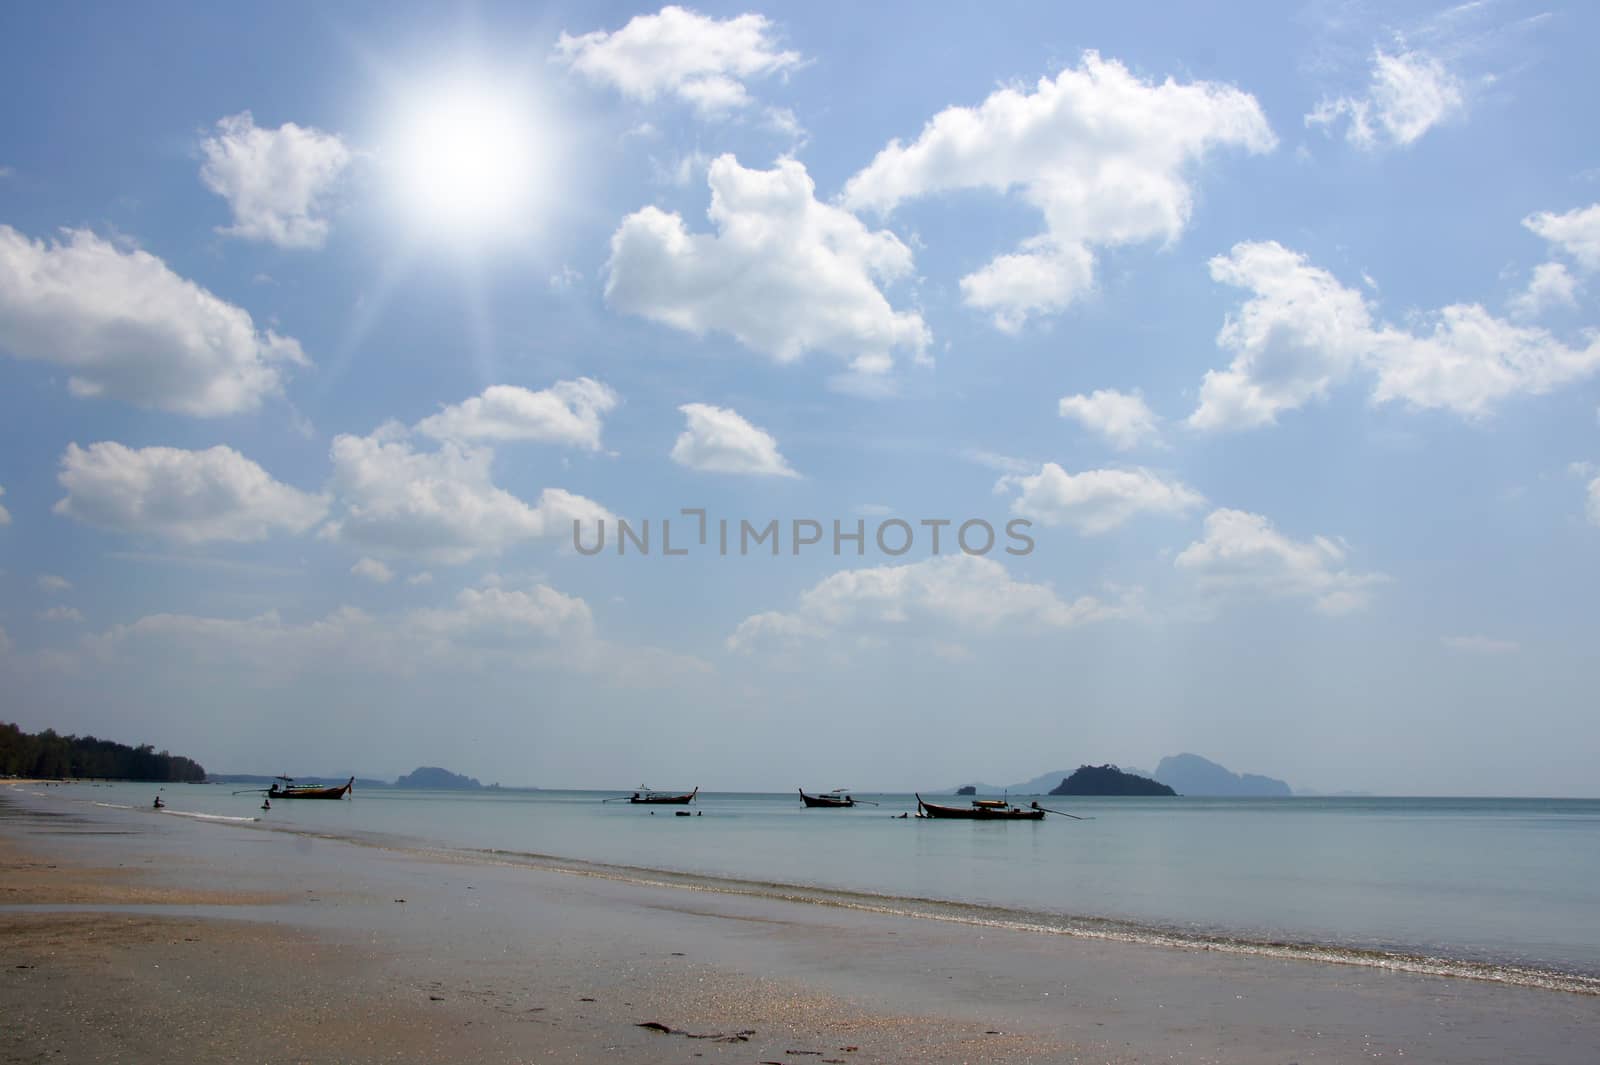 Sand, sea and sky at Pak Meng Beach, Trang Province, Thailand.